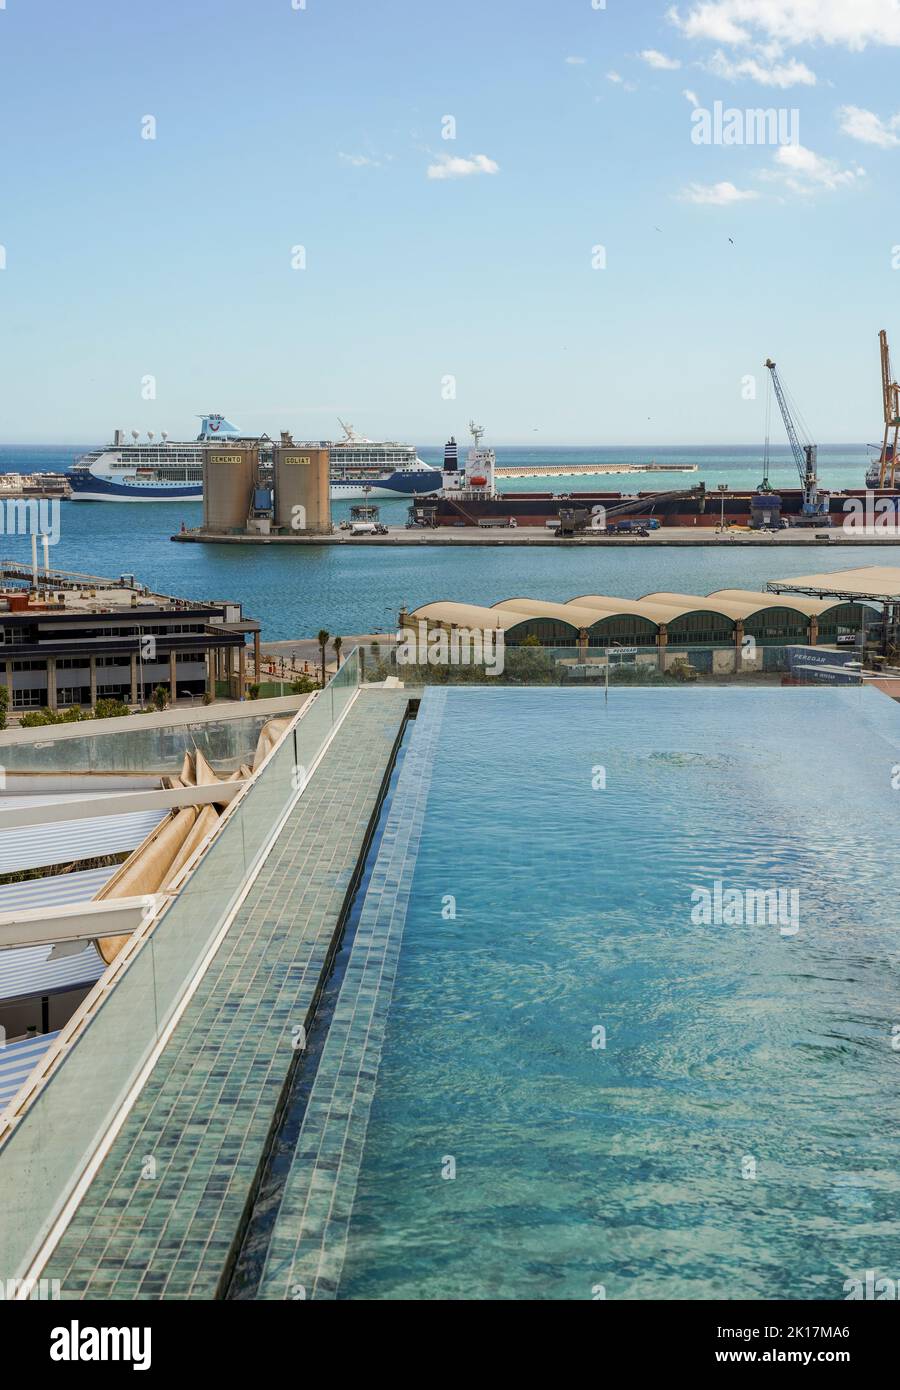 Kleiner, unendlicher Pool auf dem Dach des Hotels, mit Hafen von Malaga im Hintergrund, Costa del Sol, Andalusien, Spanien. Stockfoto